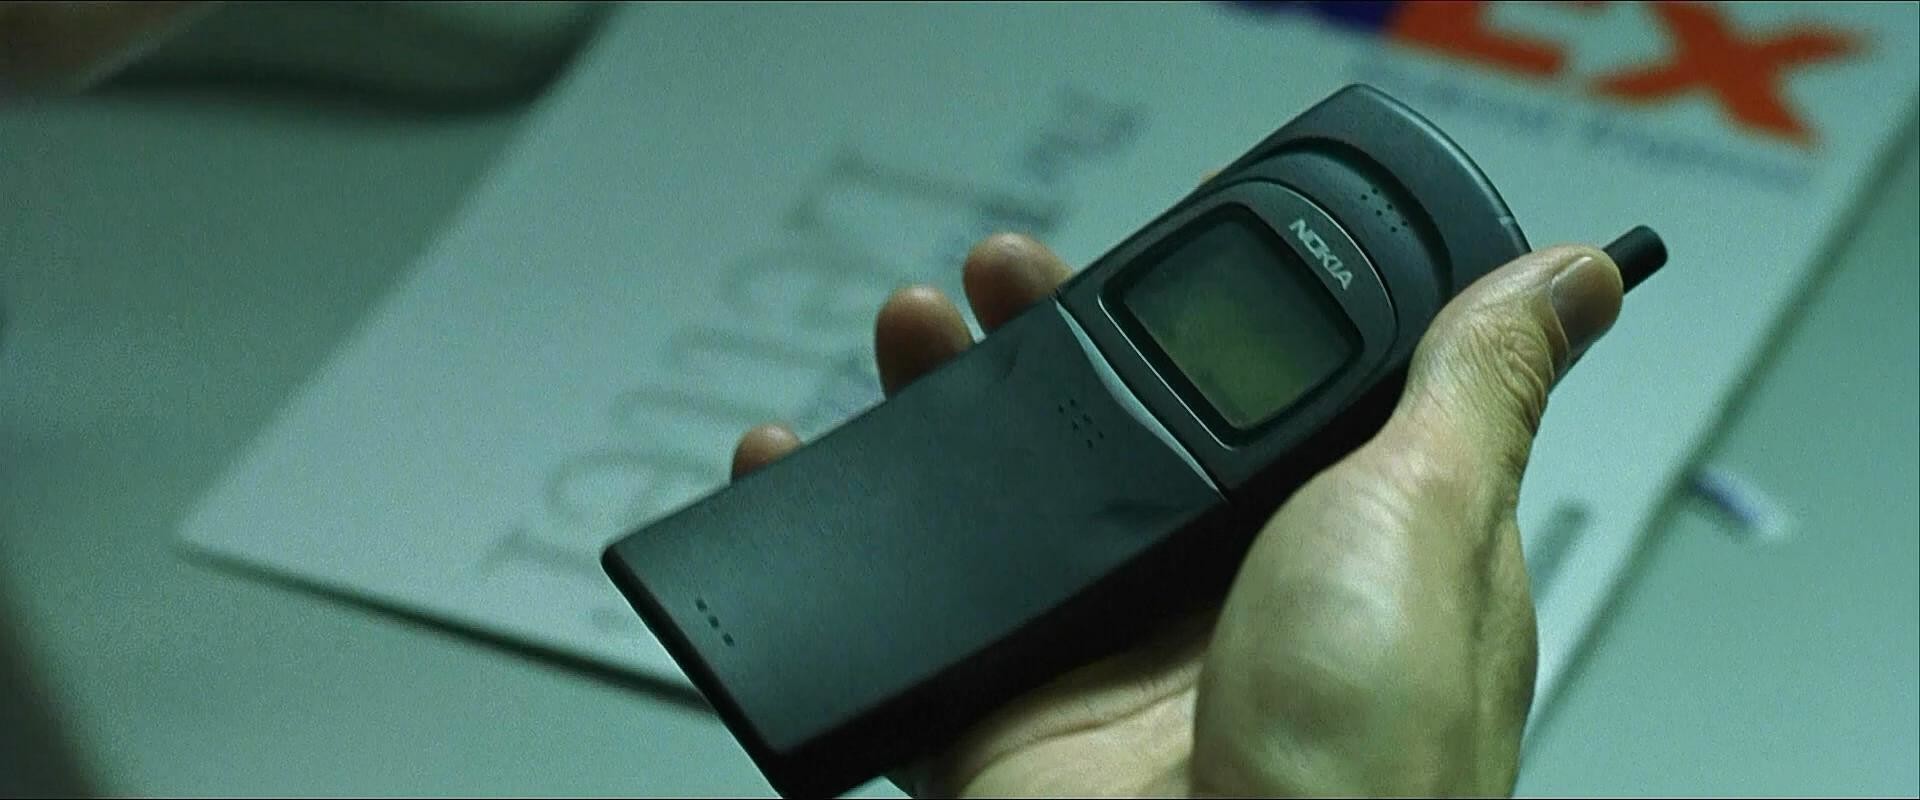 Телефон из матрицы. Nokia 8110 Нео. Nokia 8110 Matrix. Матрица нокиа 8110. Телефон из матрицы Nokia 8110.